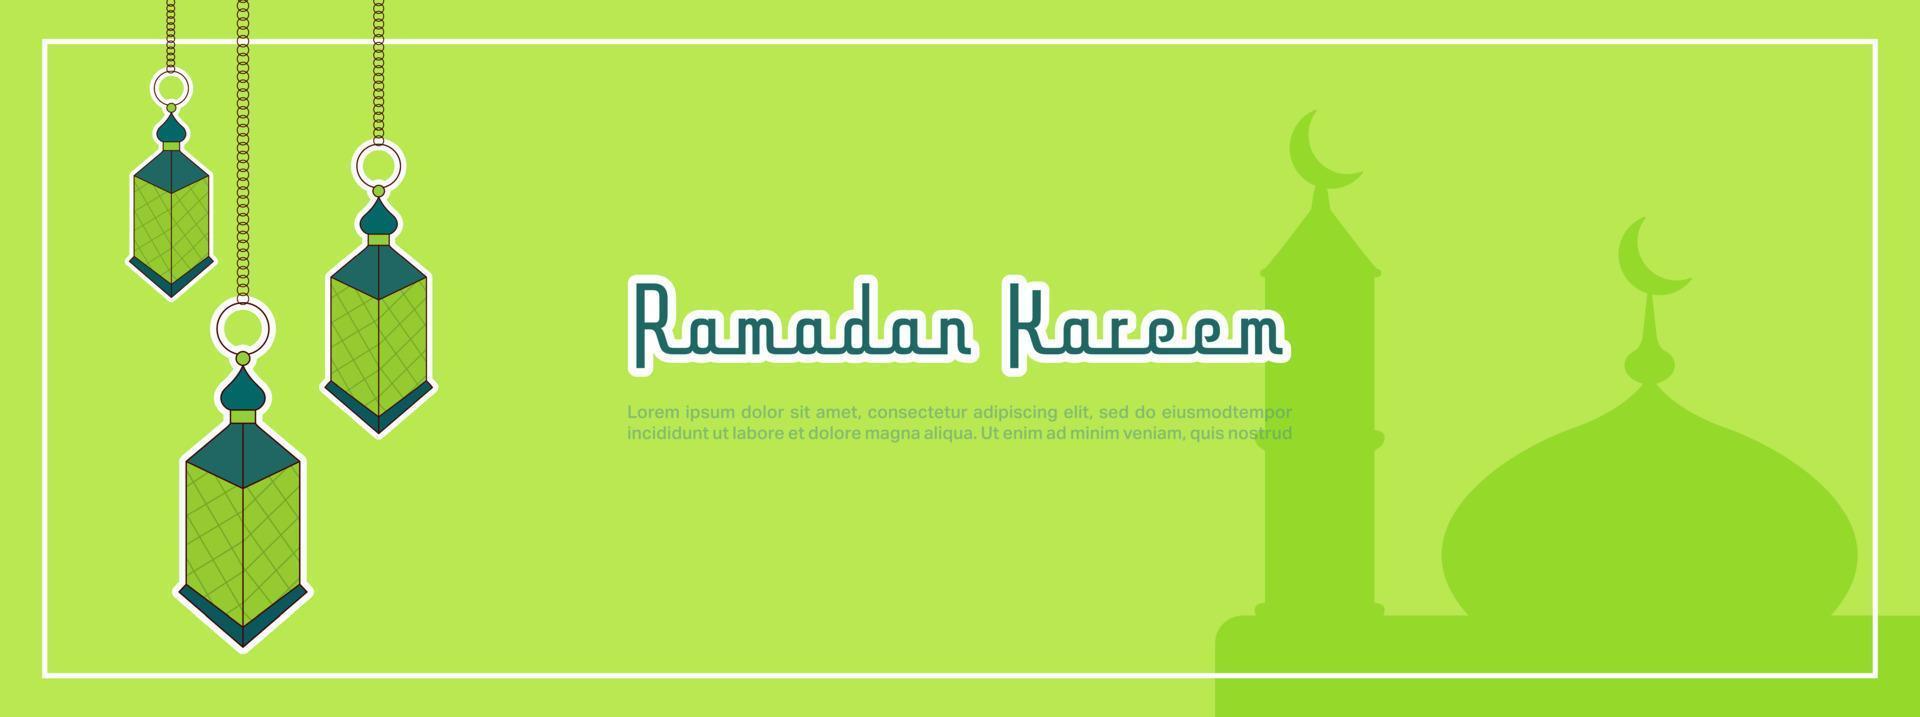 ramadán kareem banner vectorial horizontal. religión musulmana mes sagrado plana banner copia espacio vector ilustración. banner con decoración de lámparas.